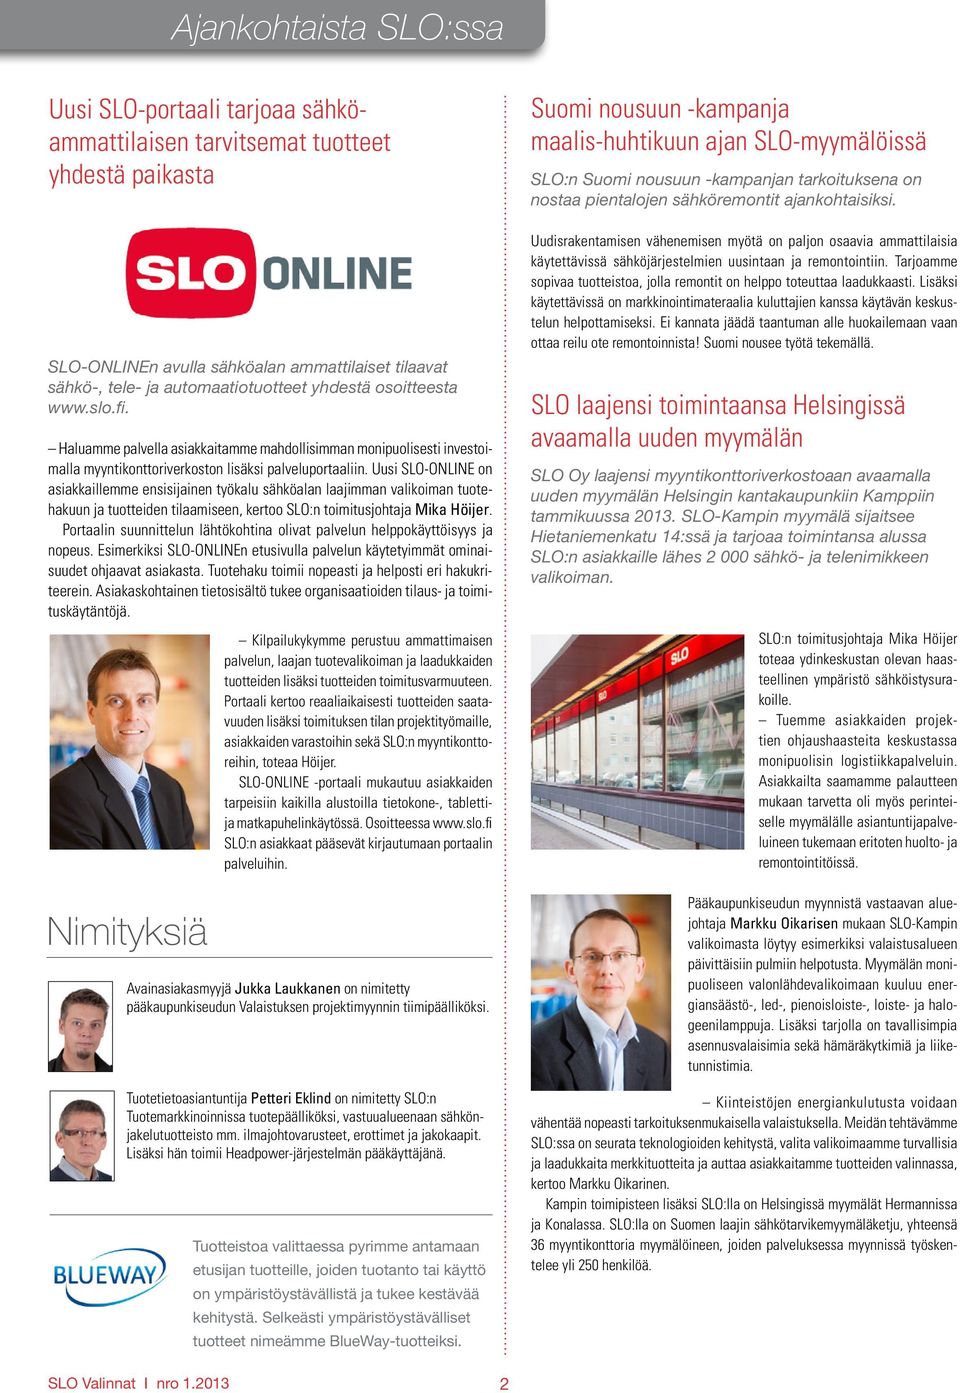 Uusi SLO-ONLINE on asiakkaillemme ensisijainen työkalu sähköalan laajimman valikoiman tuotehakuun ja tuotteiden tilaamiseen, kertoo SLO:n toimitusjohtaja Mika Höijer.